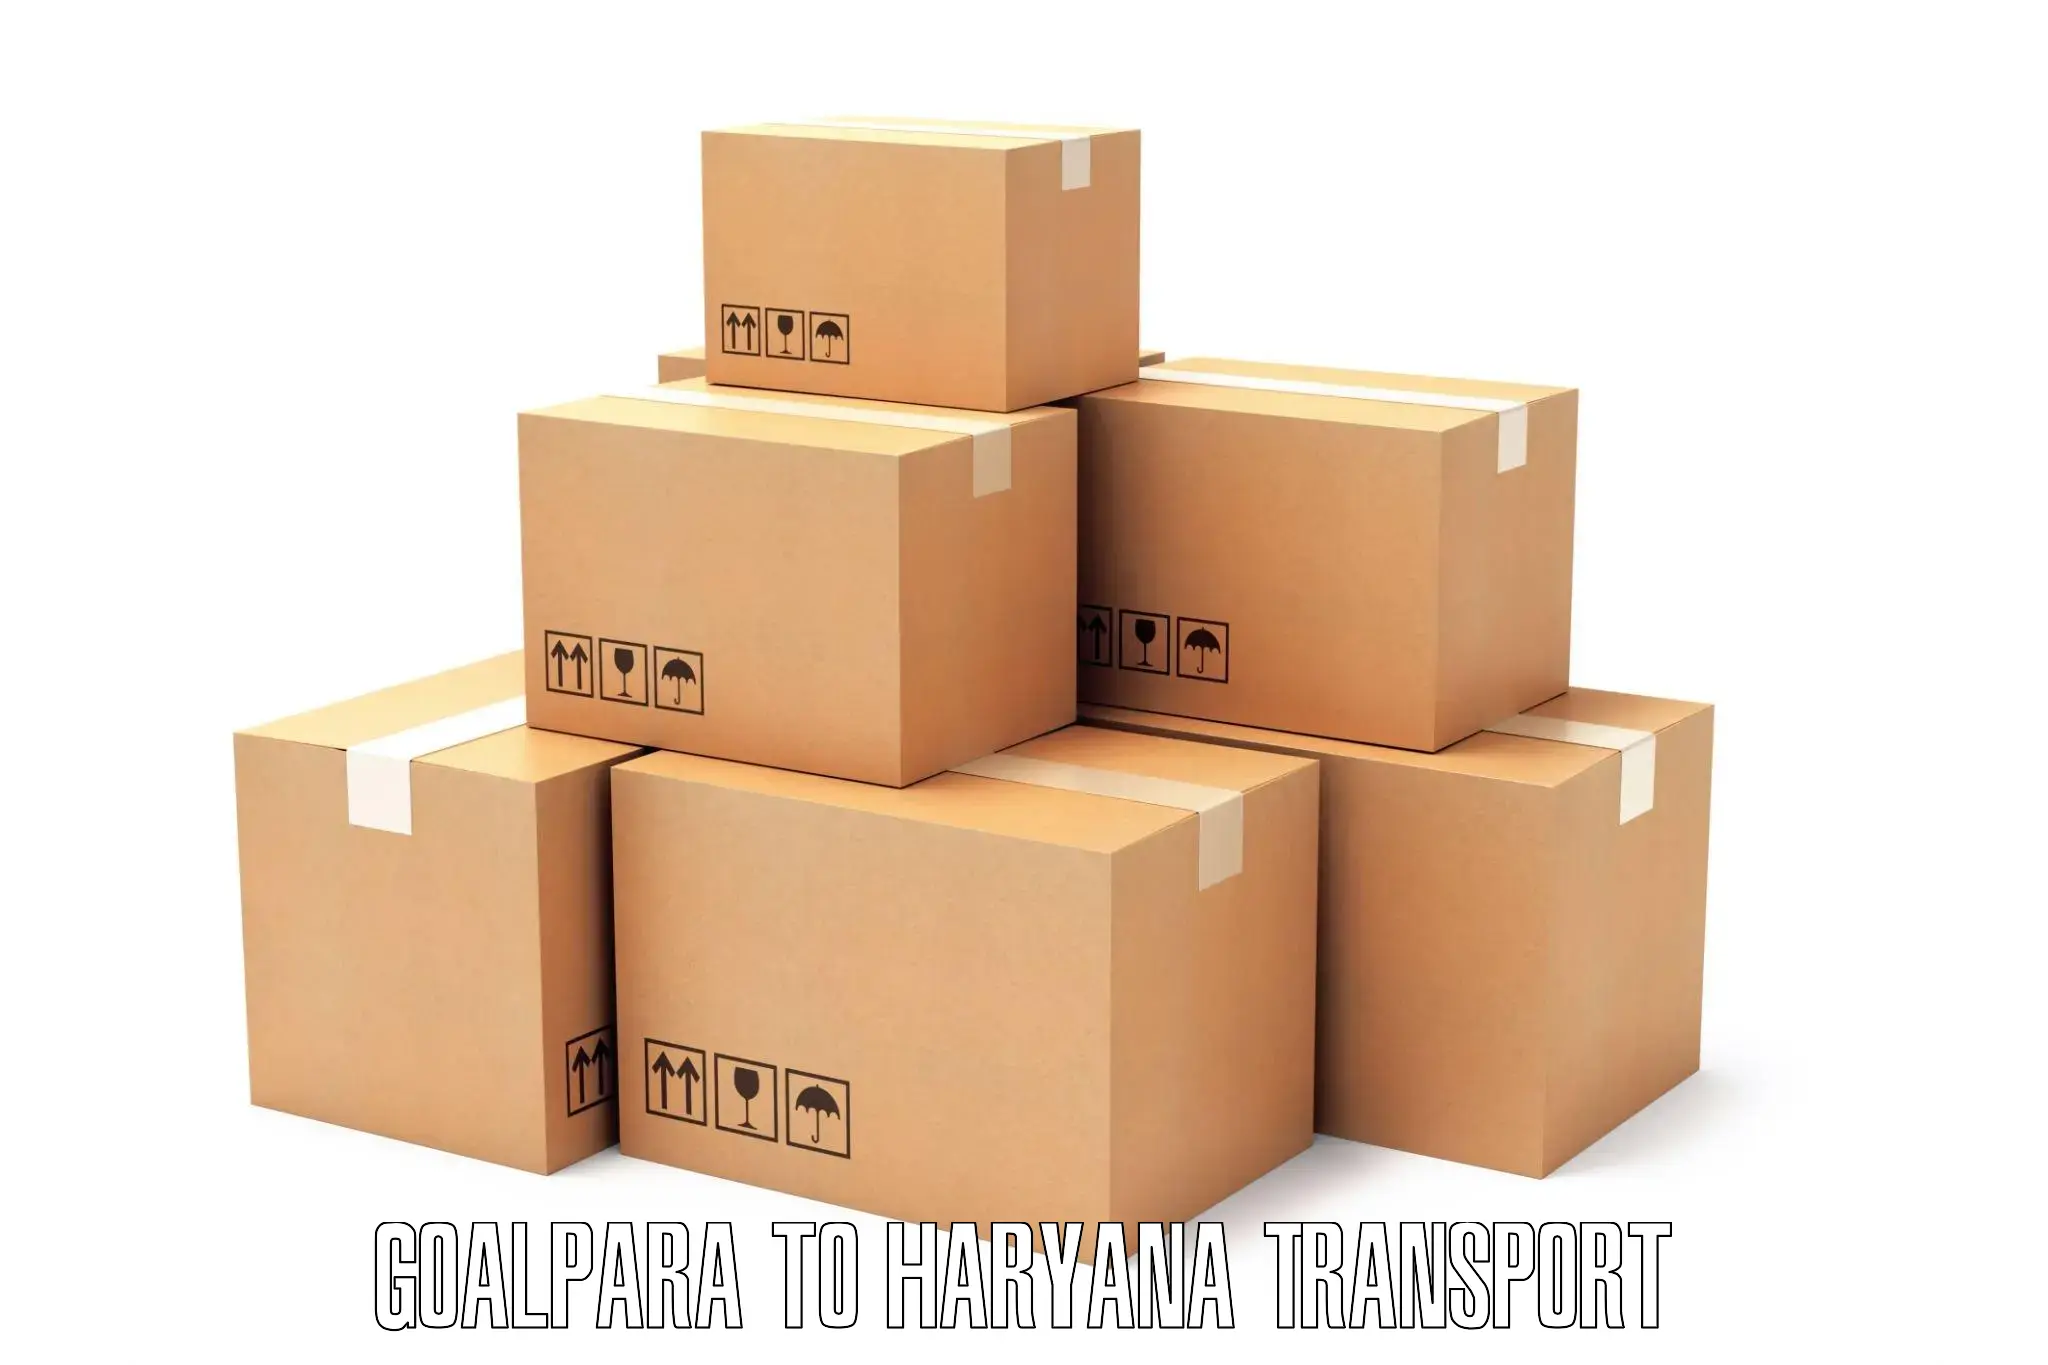 Shipping partner Goalpara to Narwana